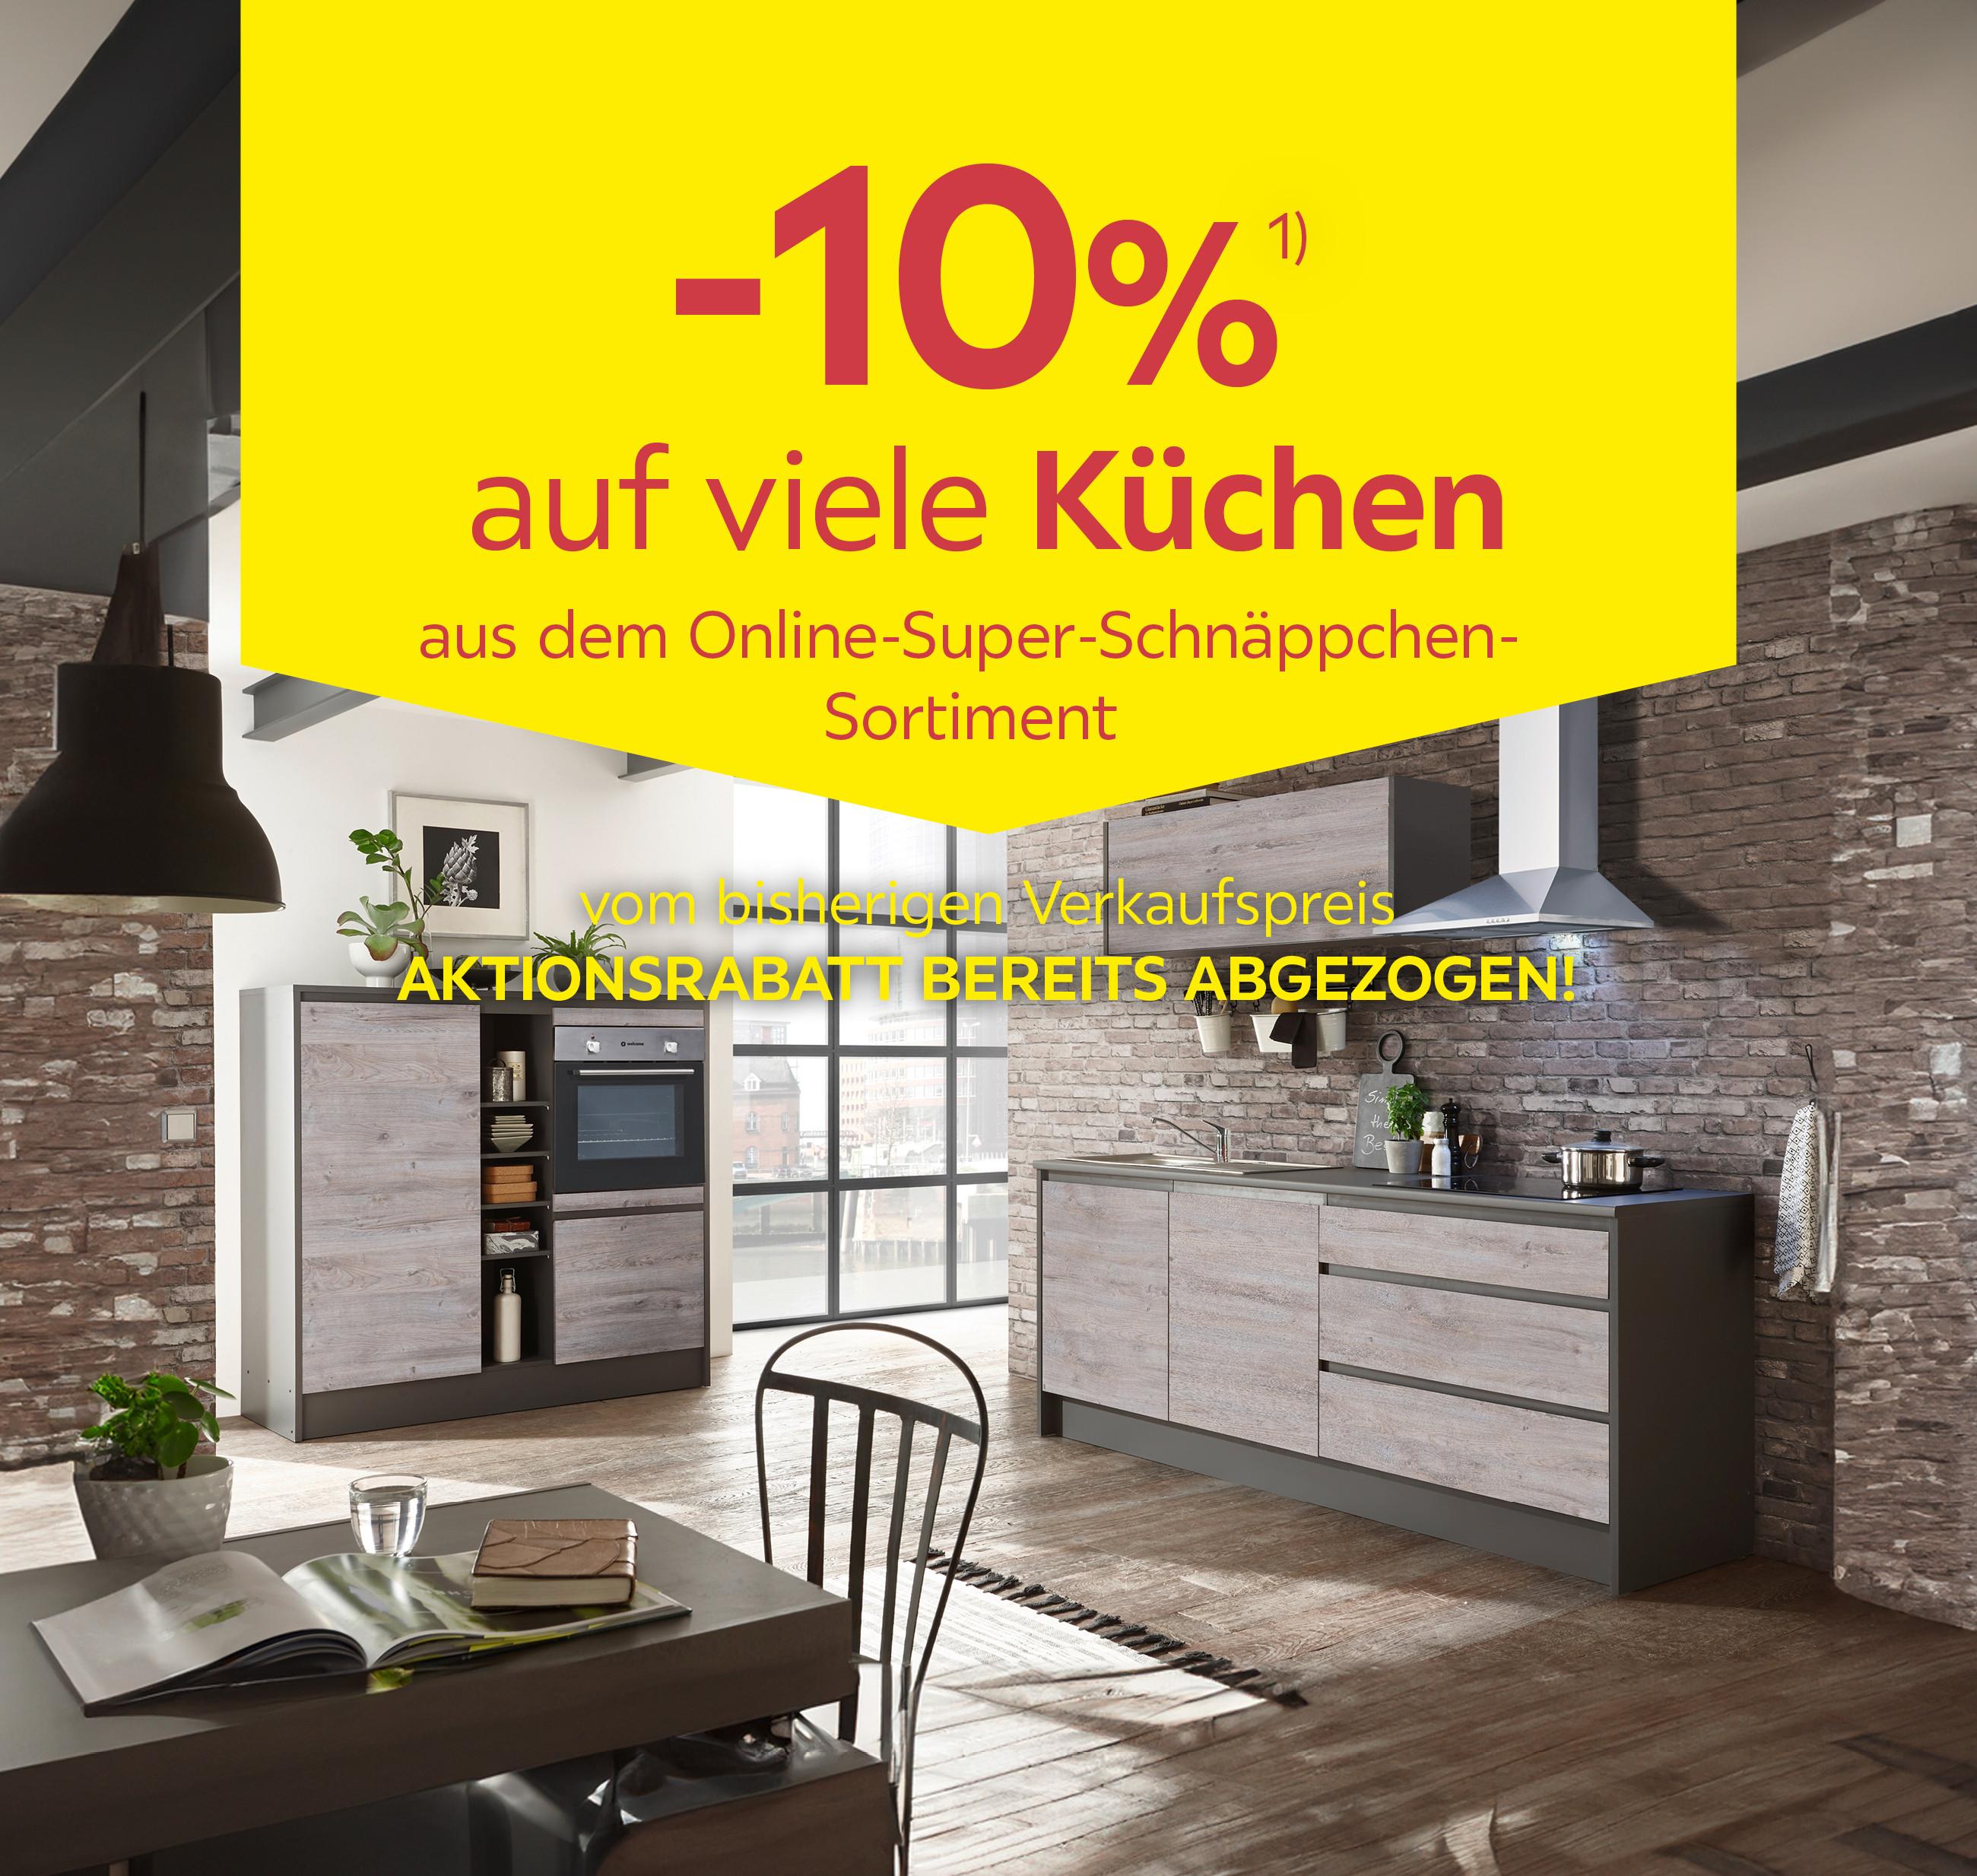 -10% auf viele Küchen aus dem Online-Super-Schnäppchen-Sortiment